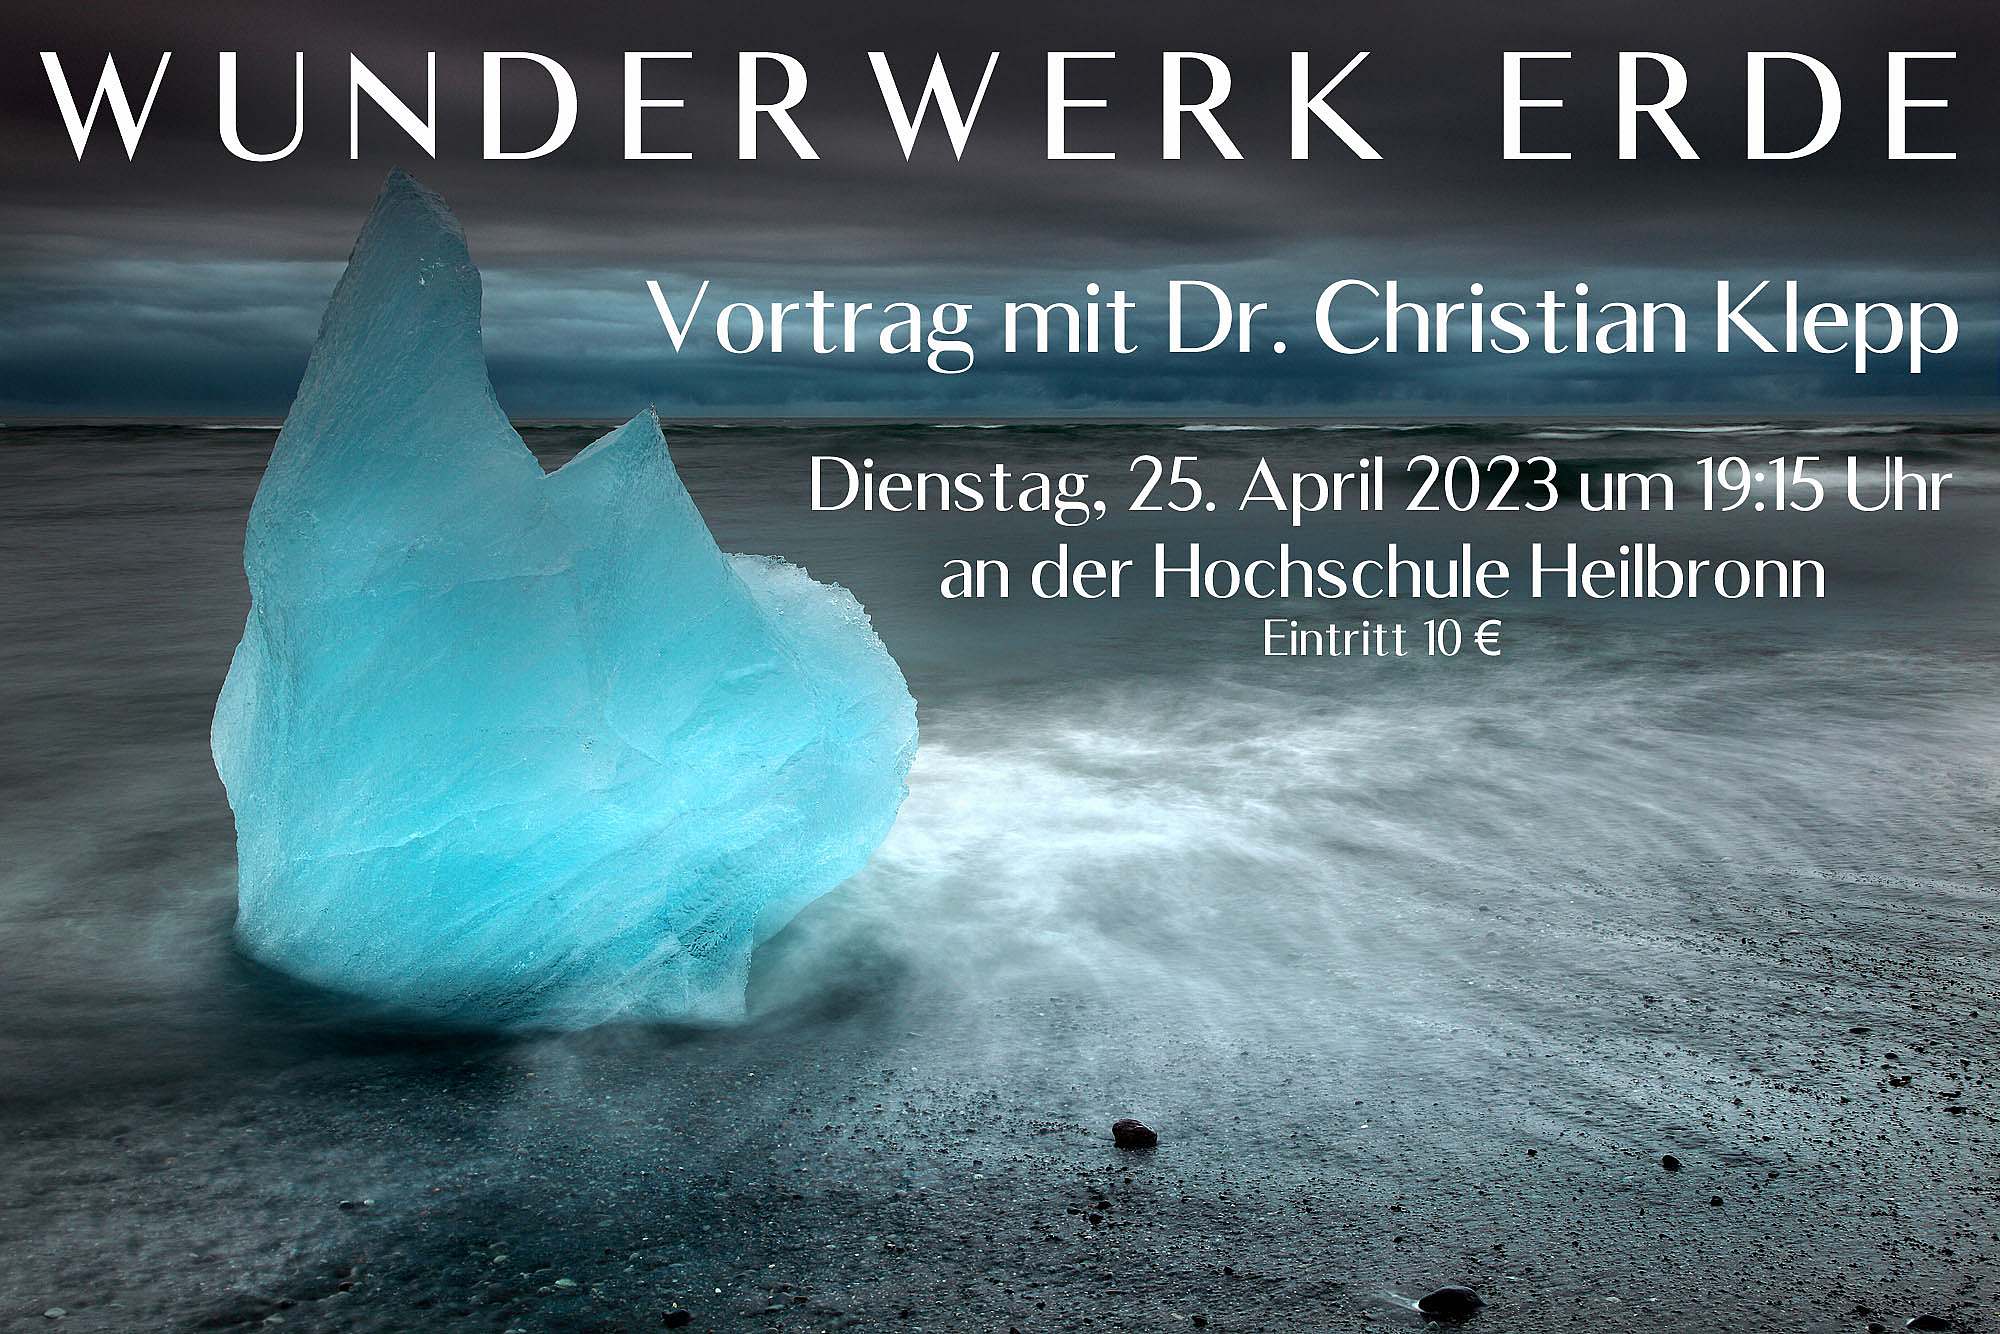 Vortrag Wunderwerk Erde an der Hochschule Heilbronn